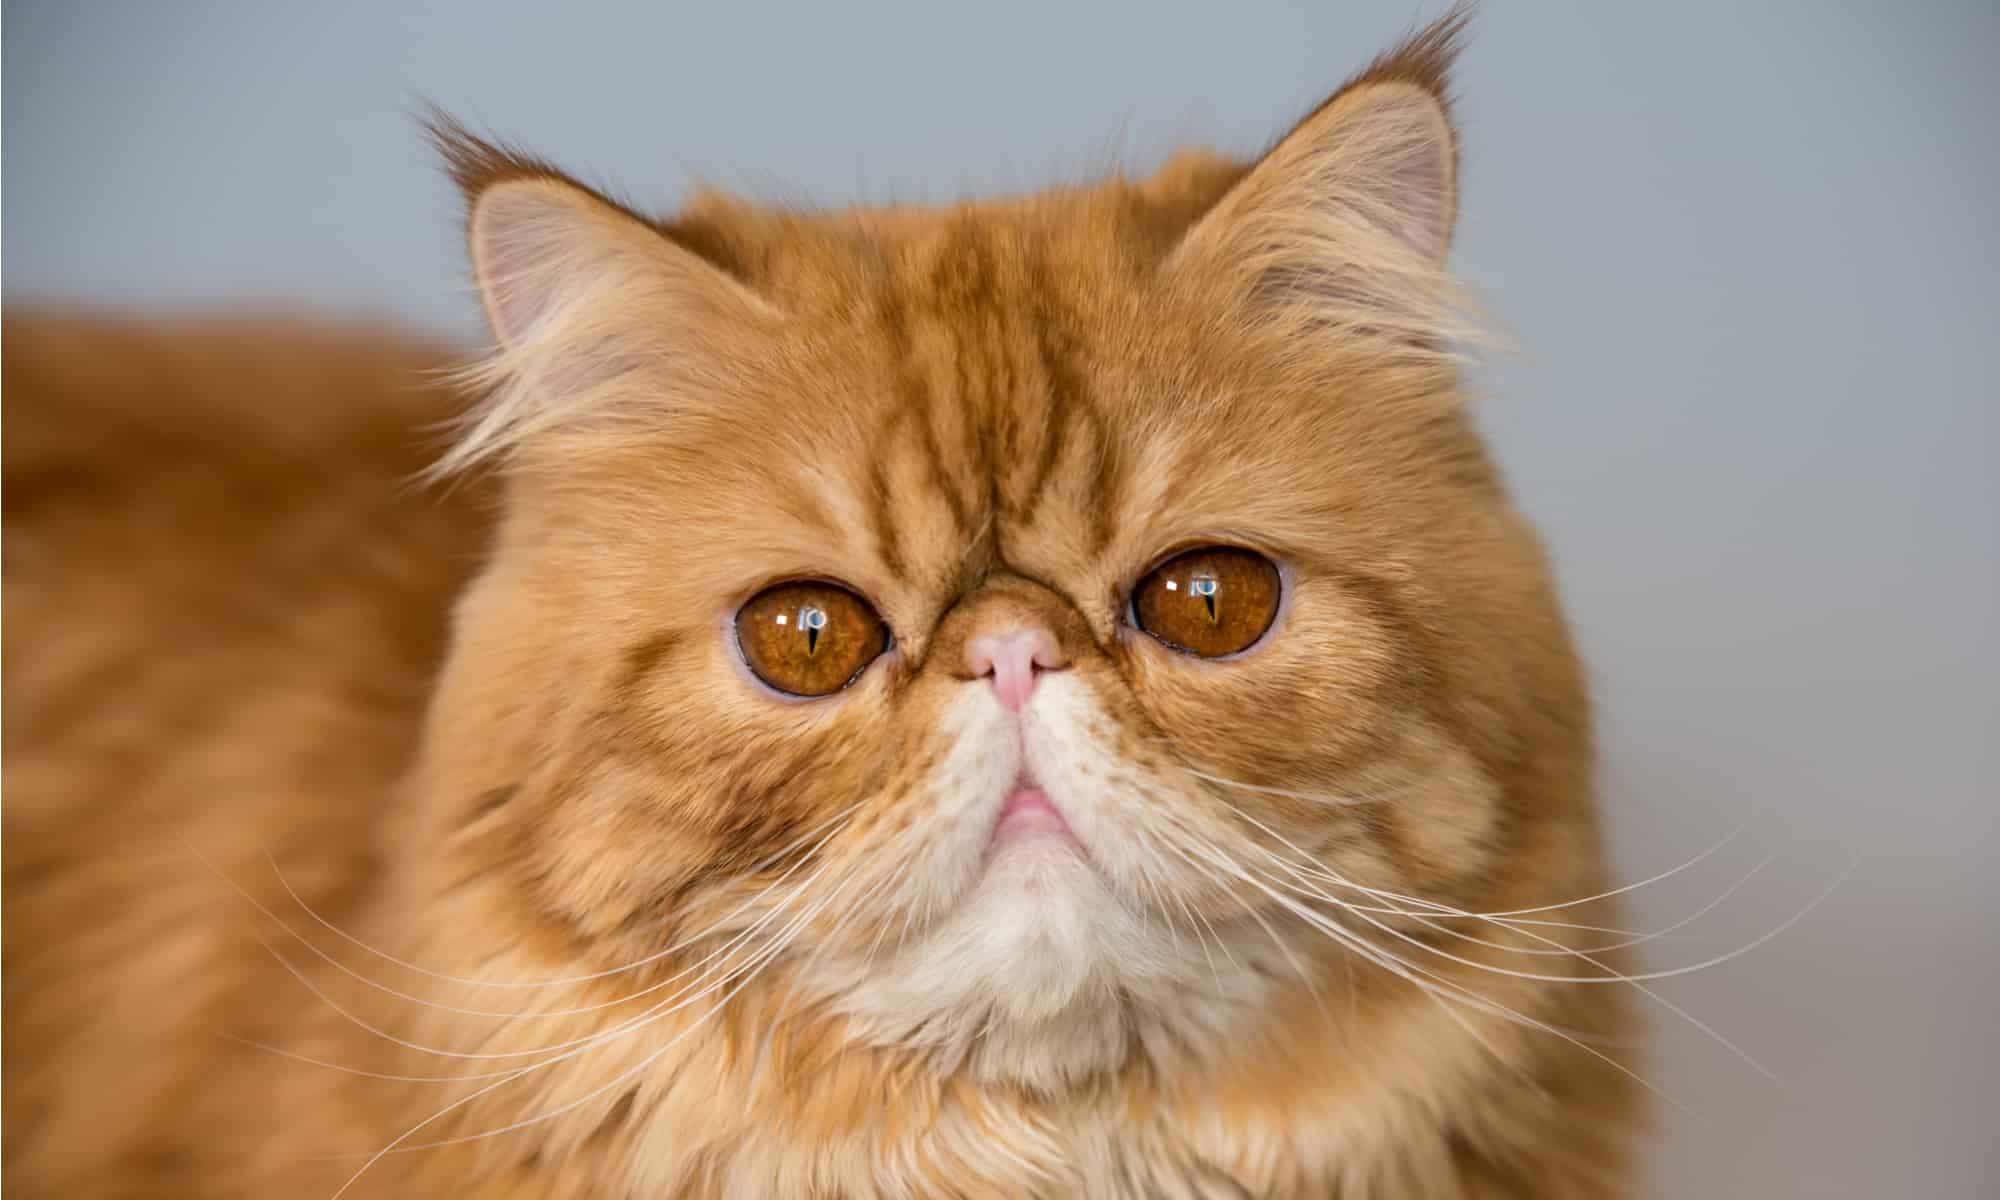 Tabby Persian cat close-up